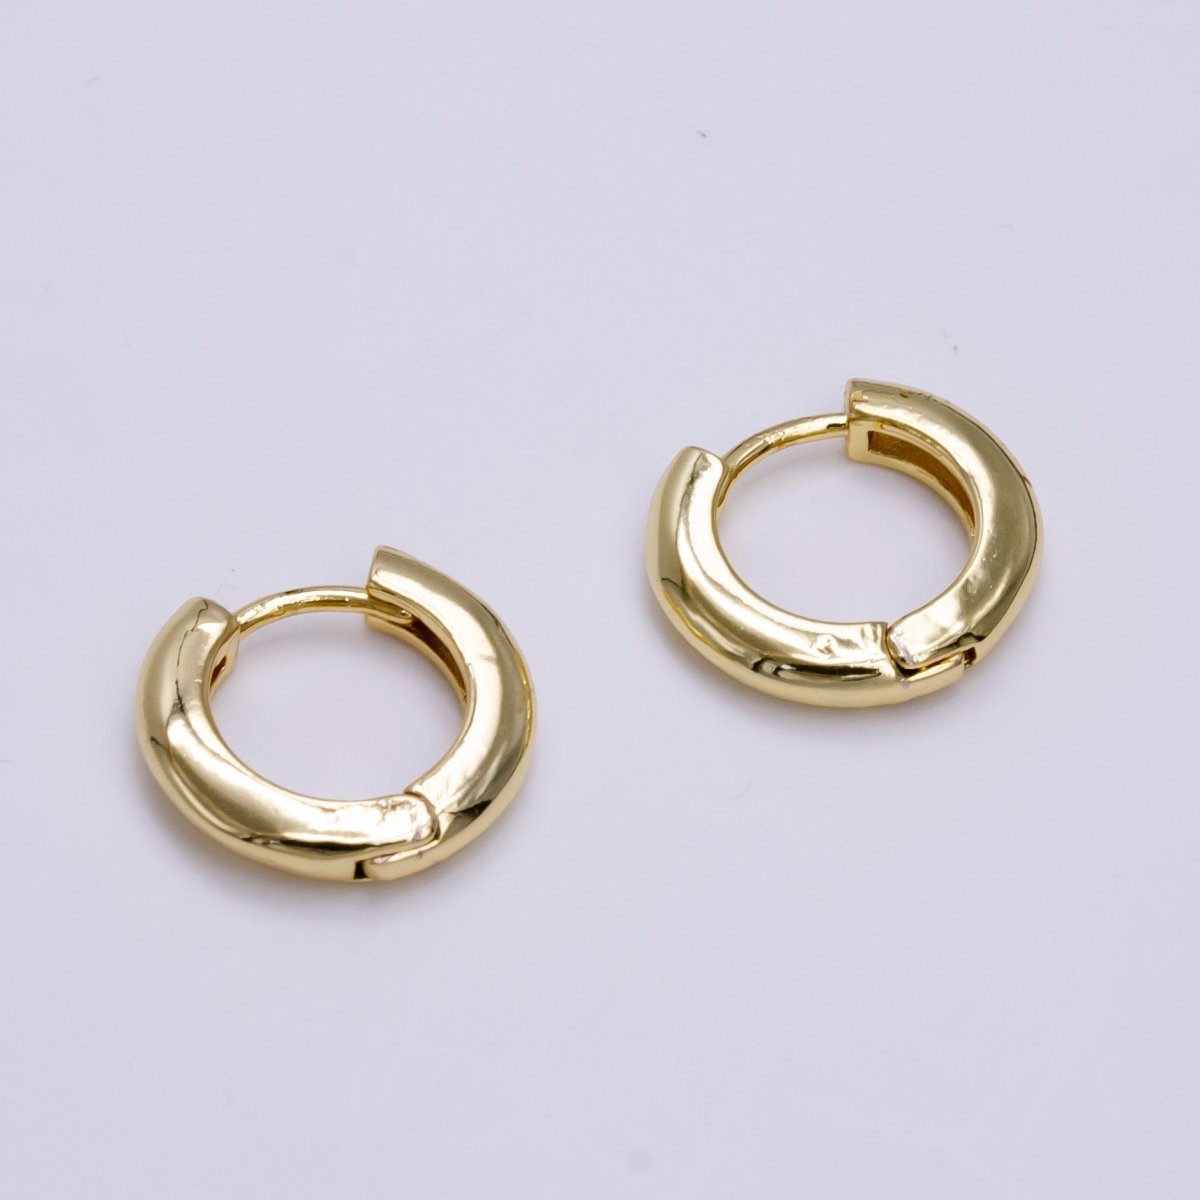 Dainty Hoop earrings 14k Gold Filled Hoop Earring 15mm Huggie Earring for Everyday Wear Hypoallergenic Jewelry Q-225 Q-226 T-278 - DLUXCA